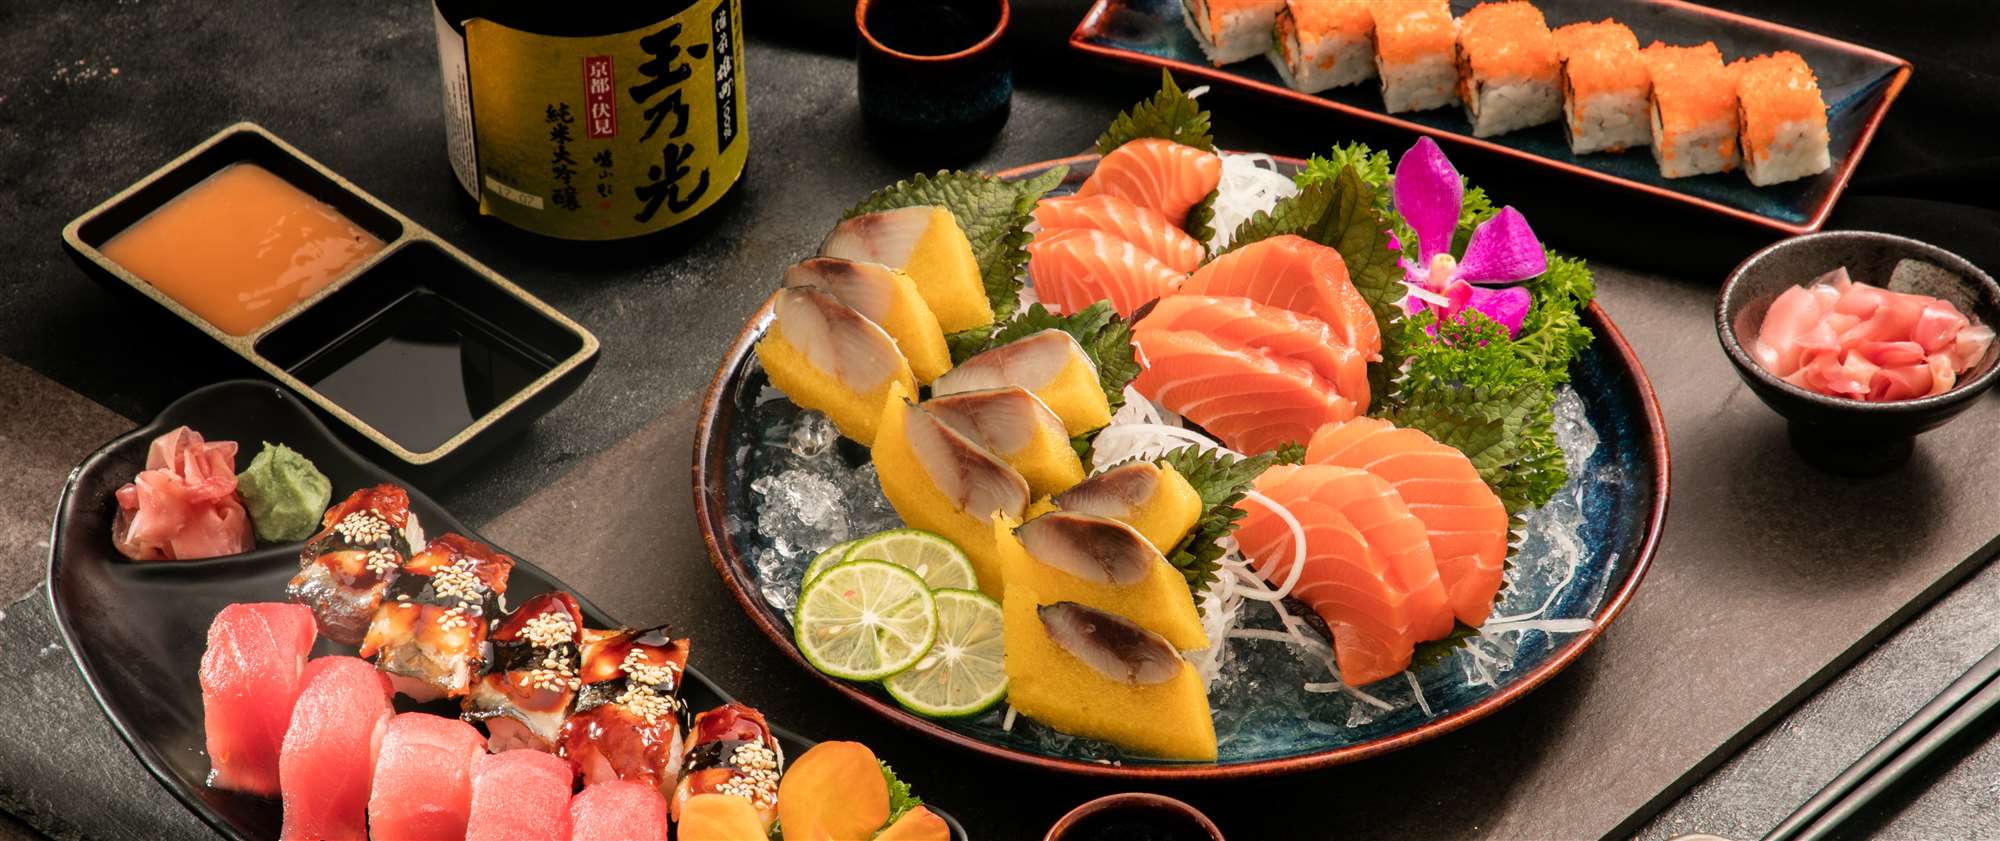 Sushi là một trong những món ăn đặc trưng của người Nhật